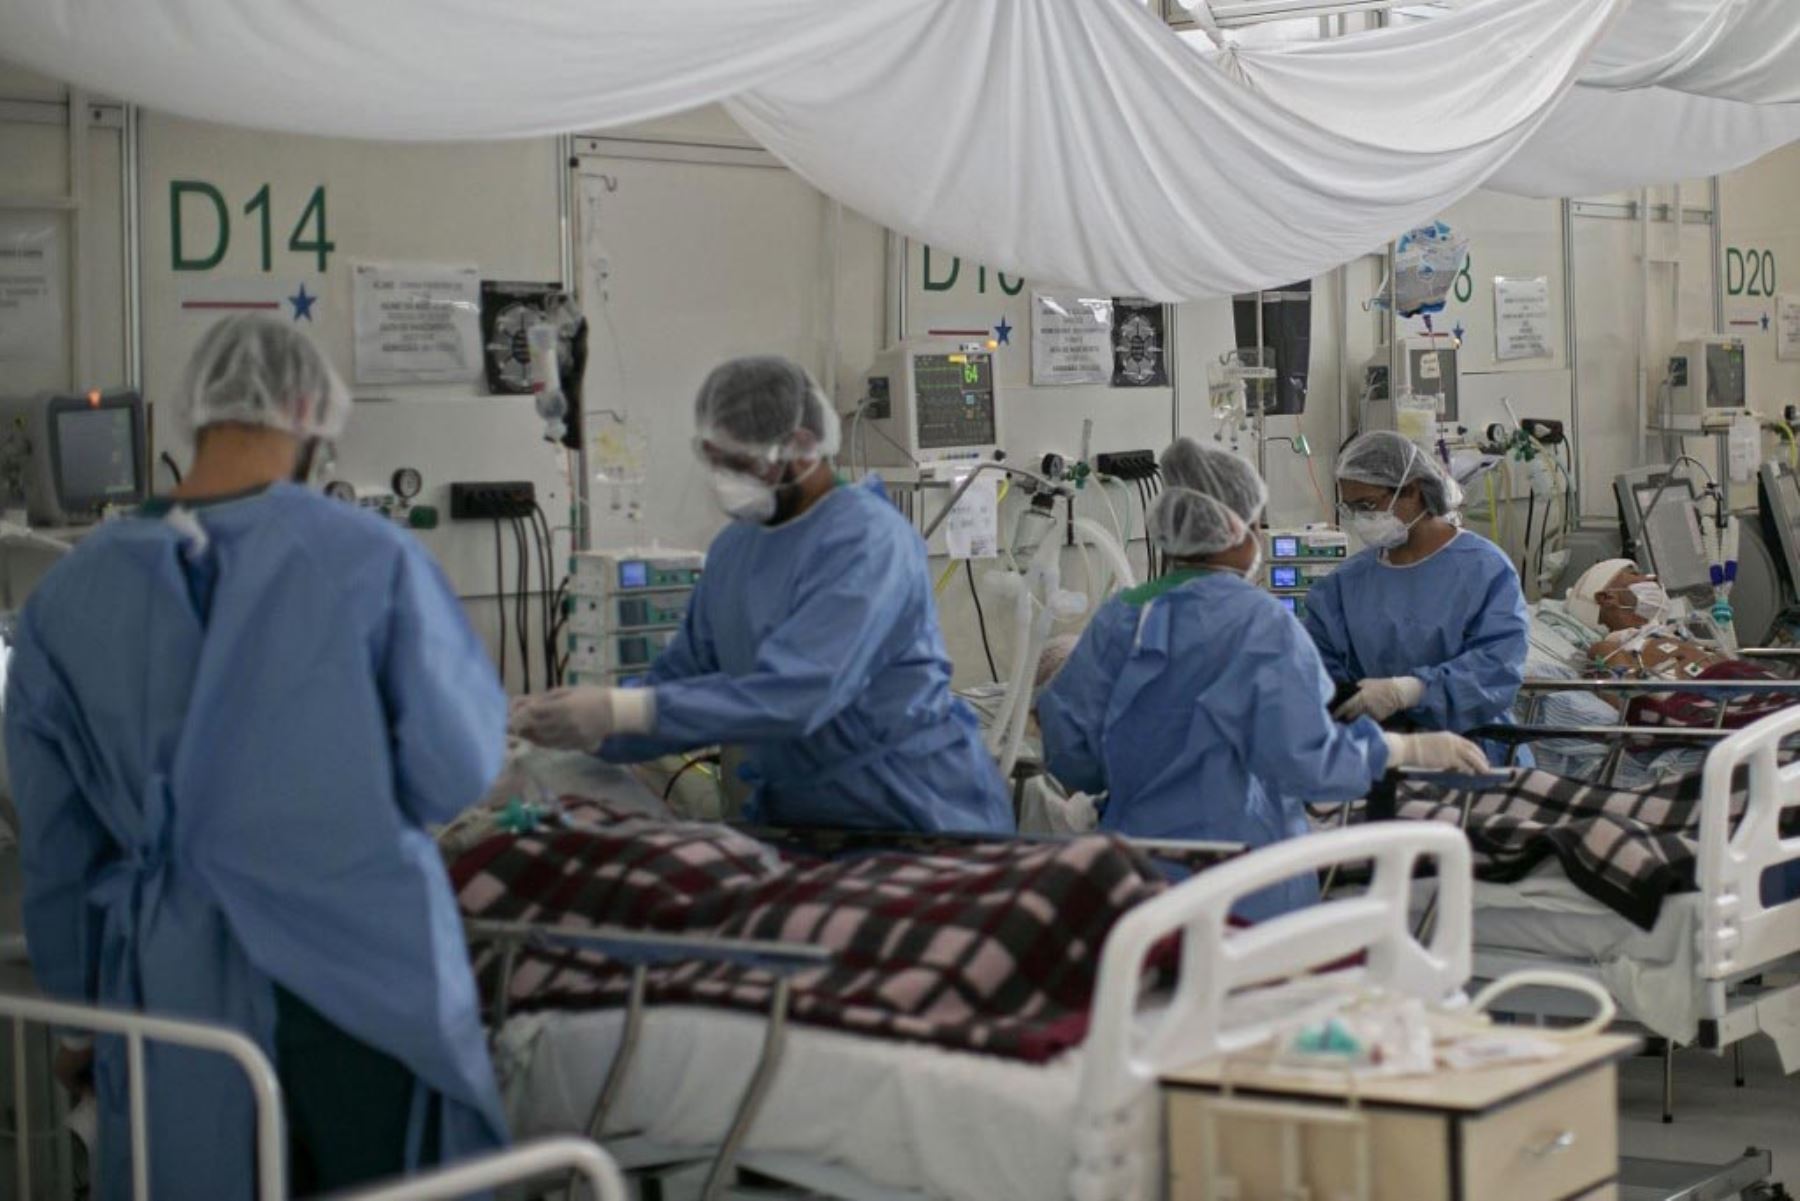 Los trabajadores médicos asisten a los pacientes con covid-19 en un hospital de campaña en Belem, estado de Pará, Brasil. Foto:AFP